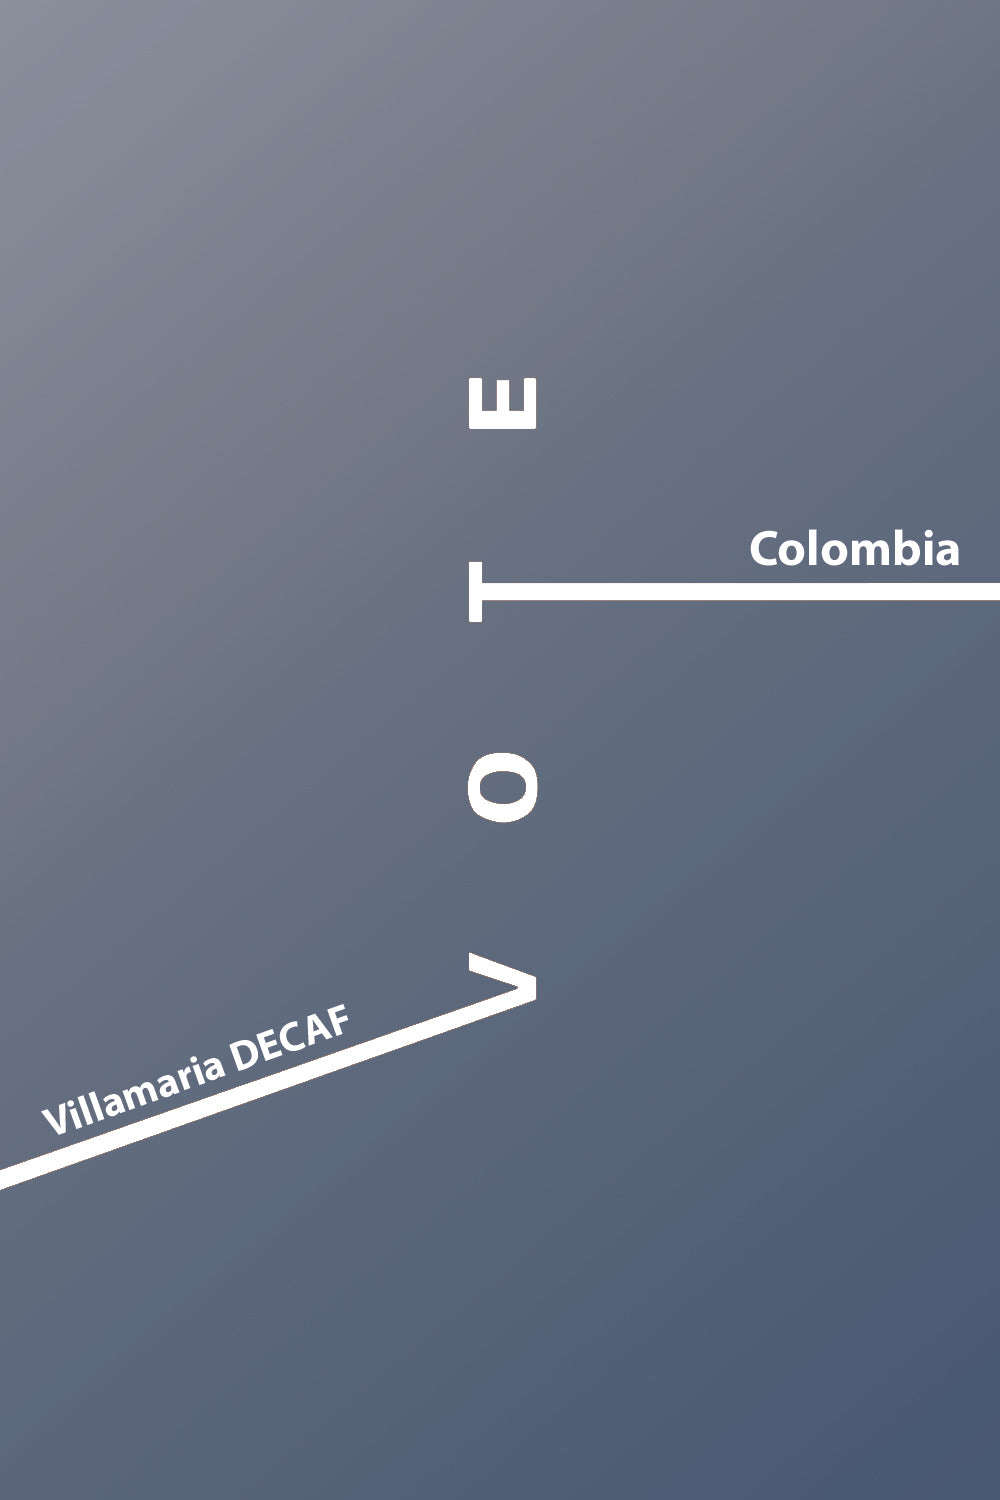 Villamaria Decaf - Colombia - Sugarcane Decaf